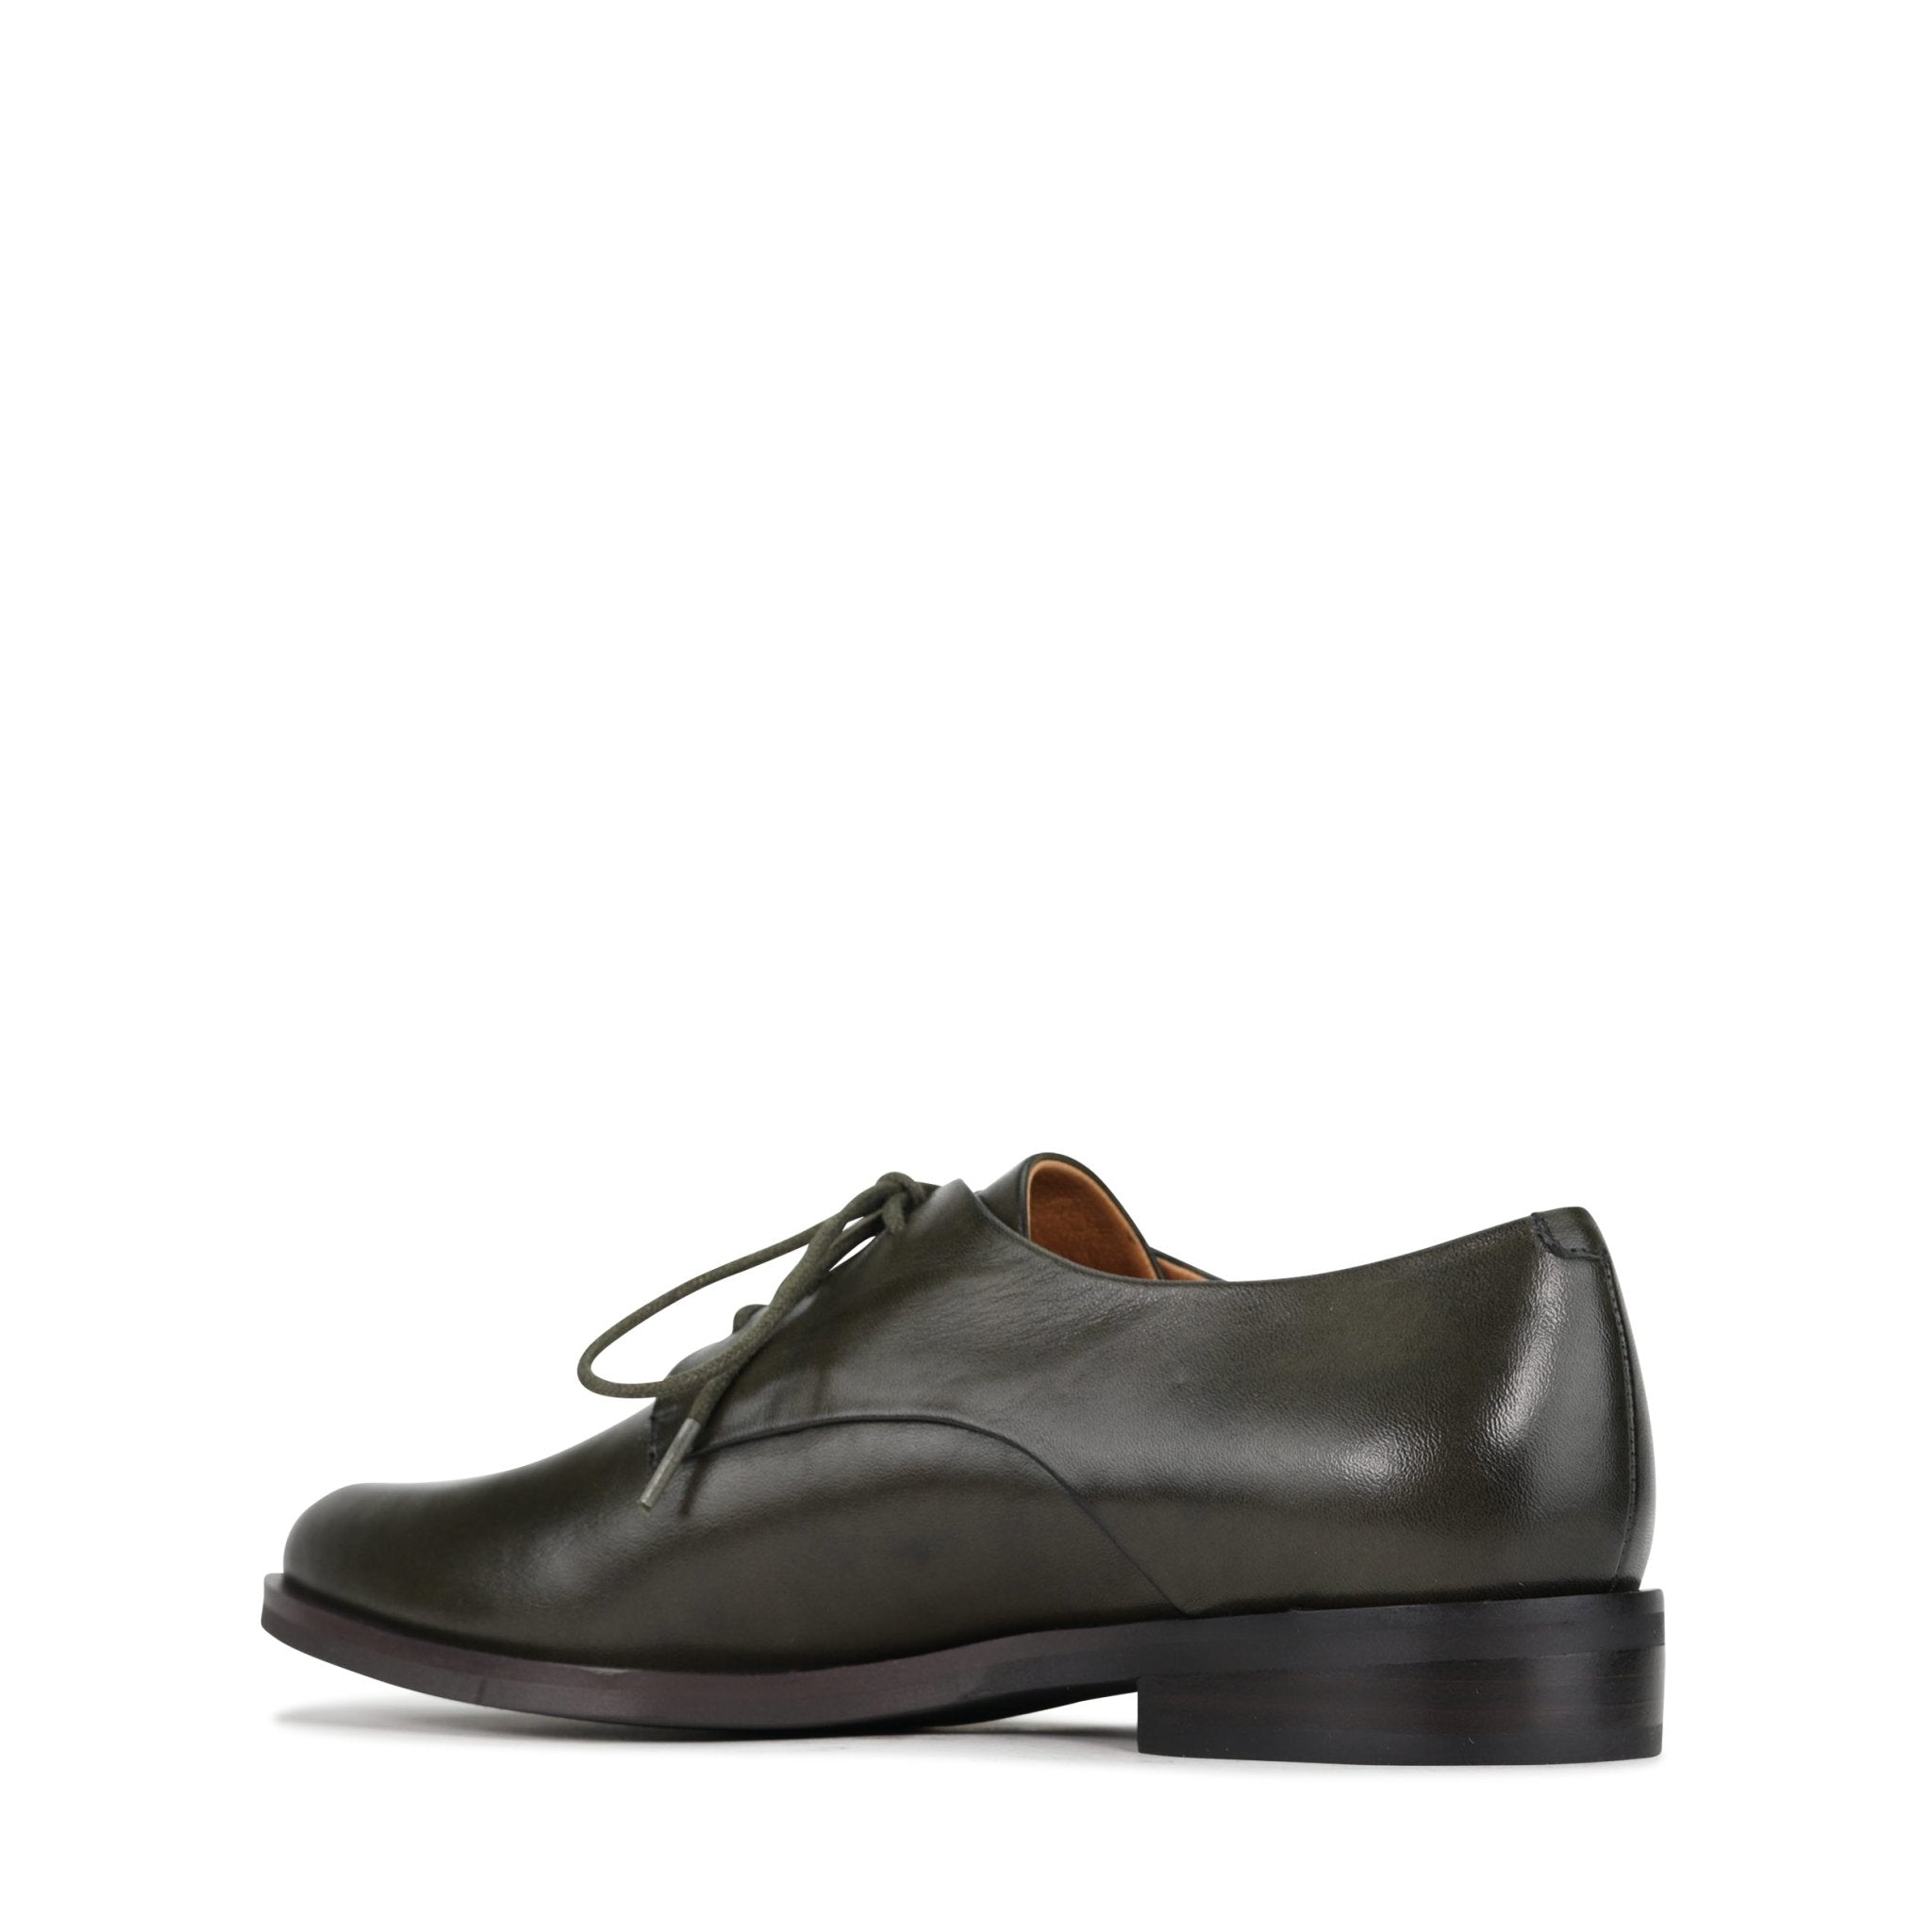 ZAIYA - EOS Footwear - #color_Dark/olive